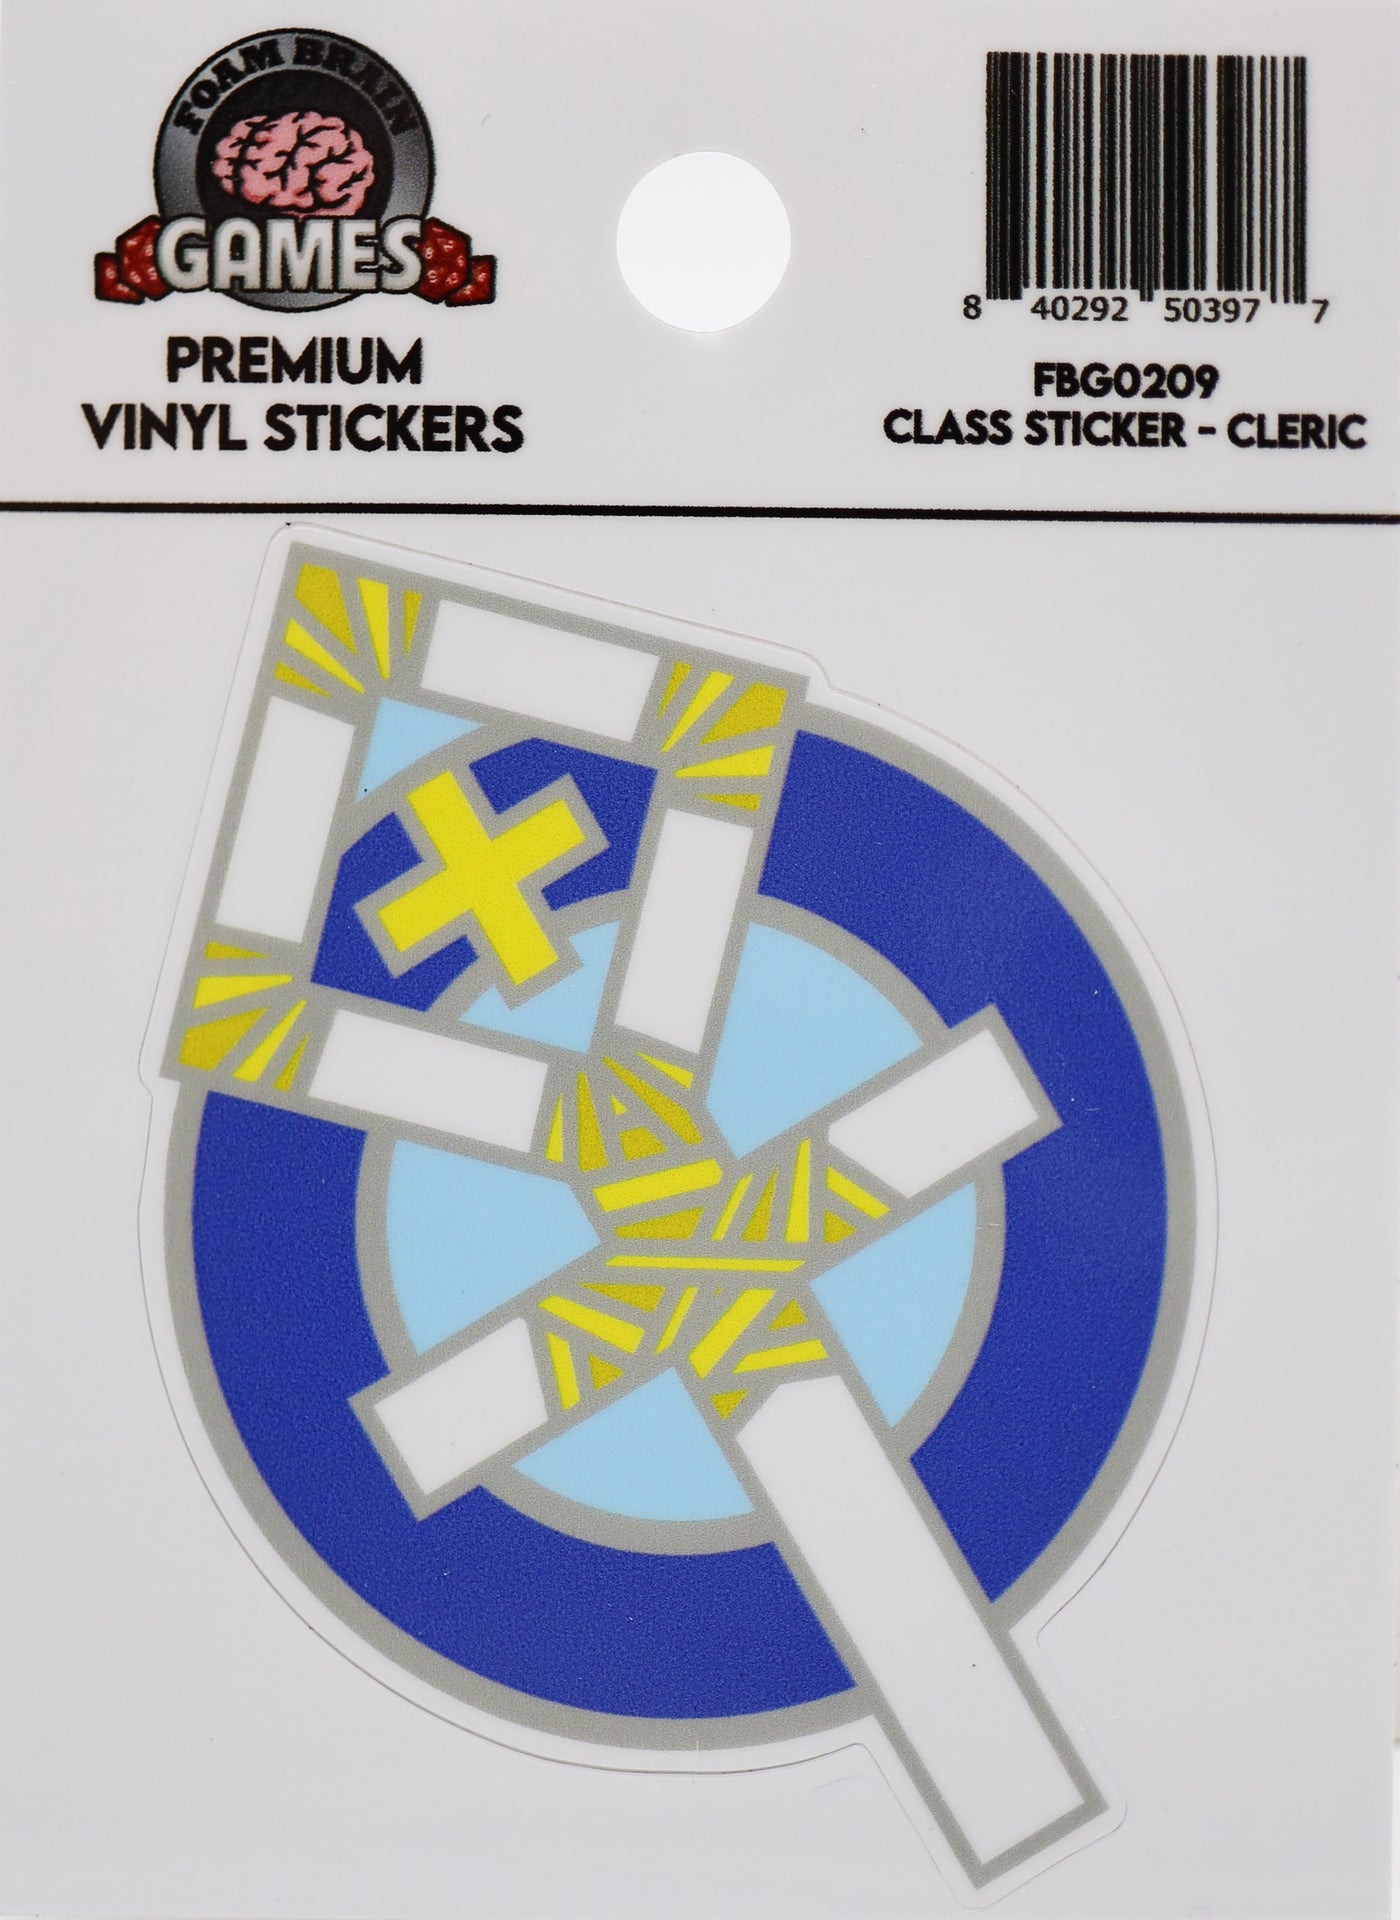 Class Sticker - Cleric Stickers Foam Brain Games